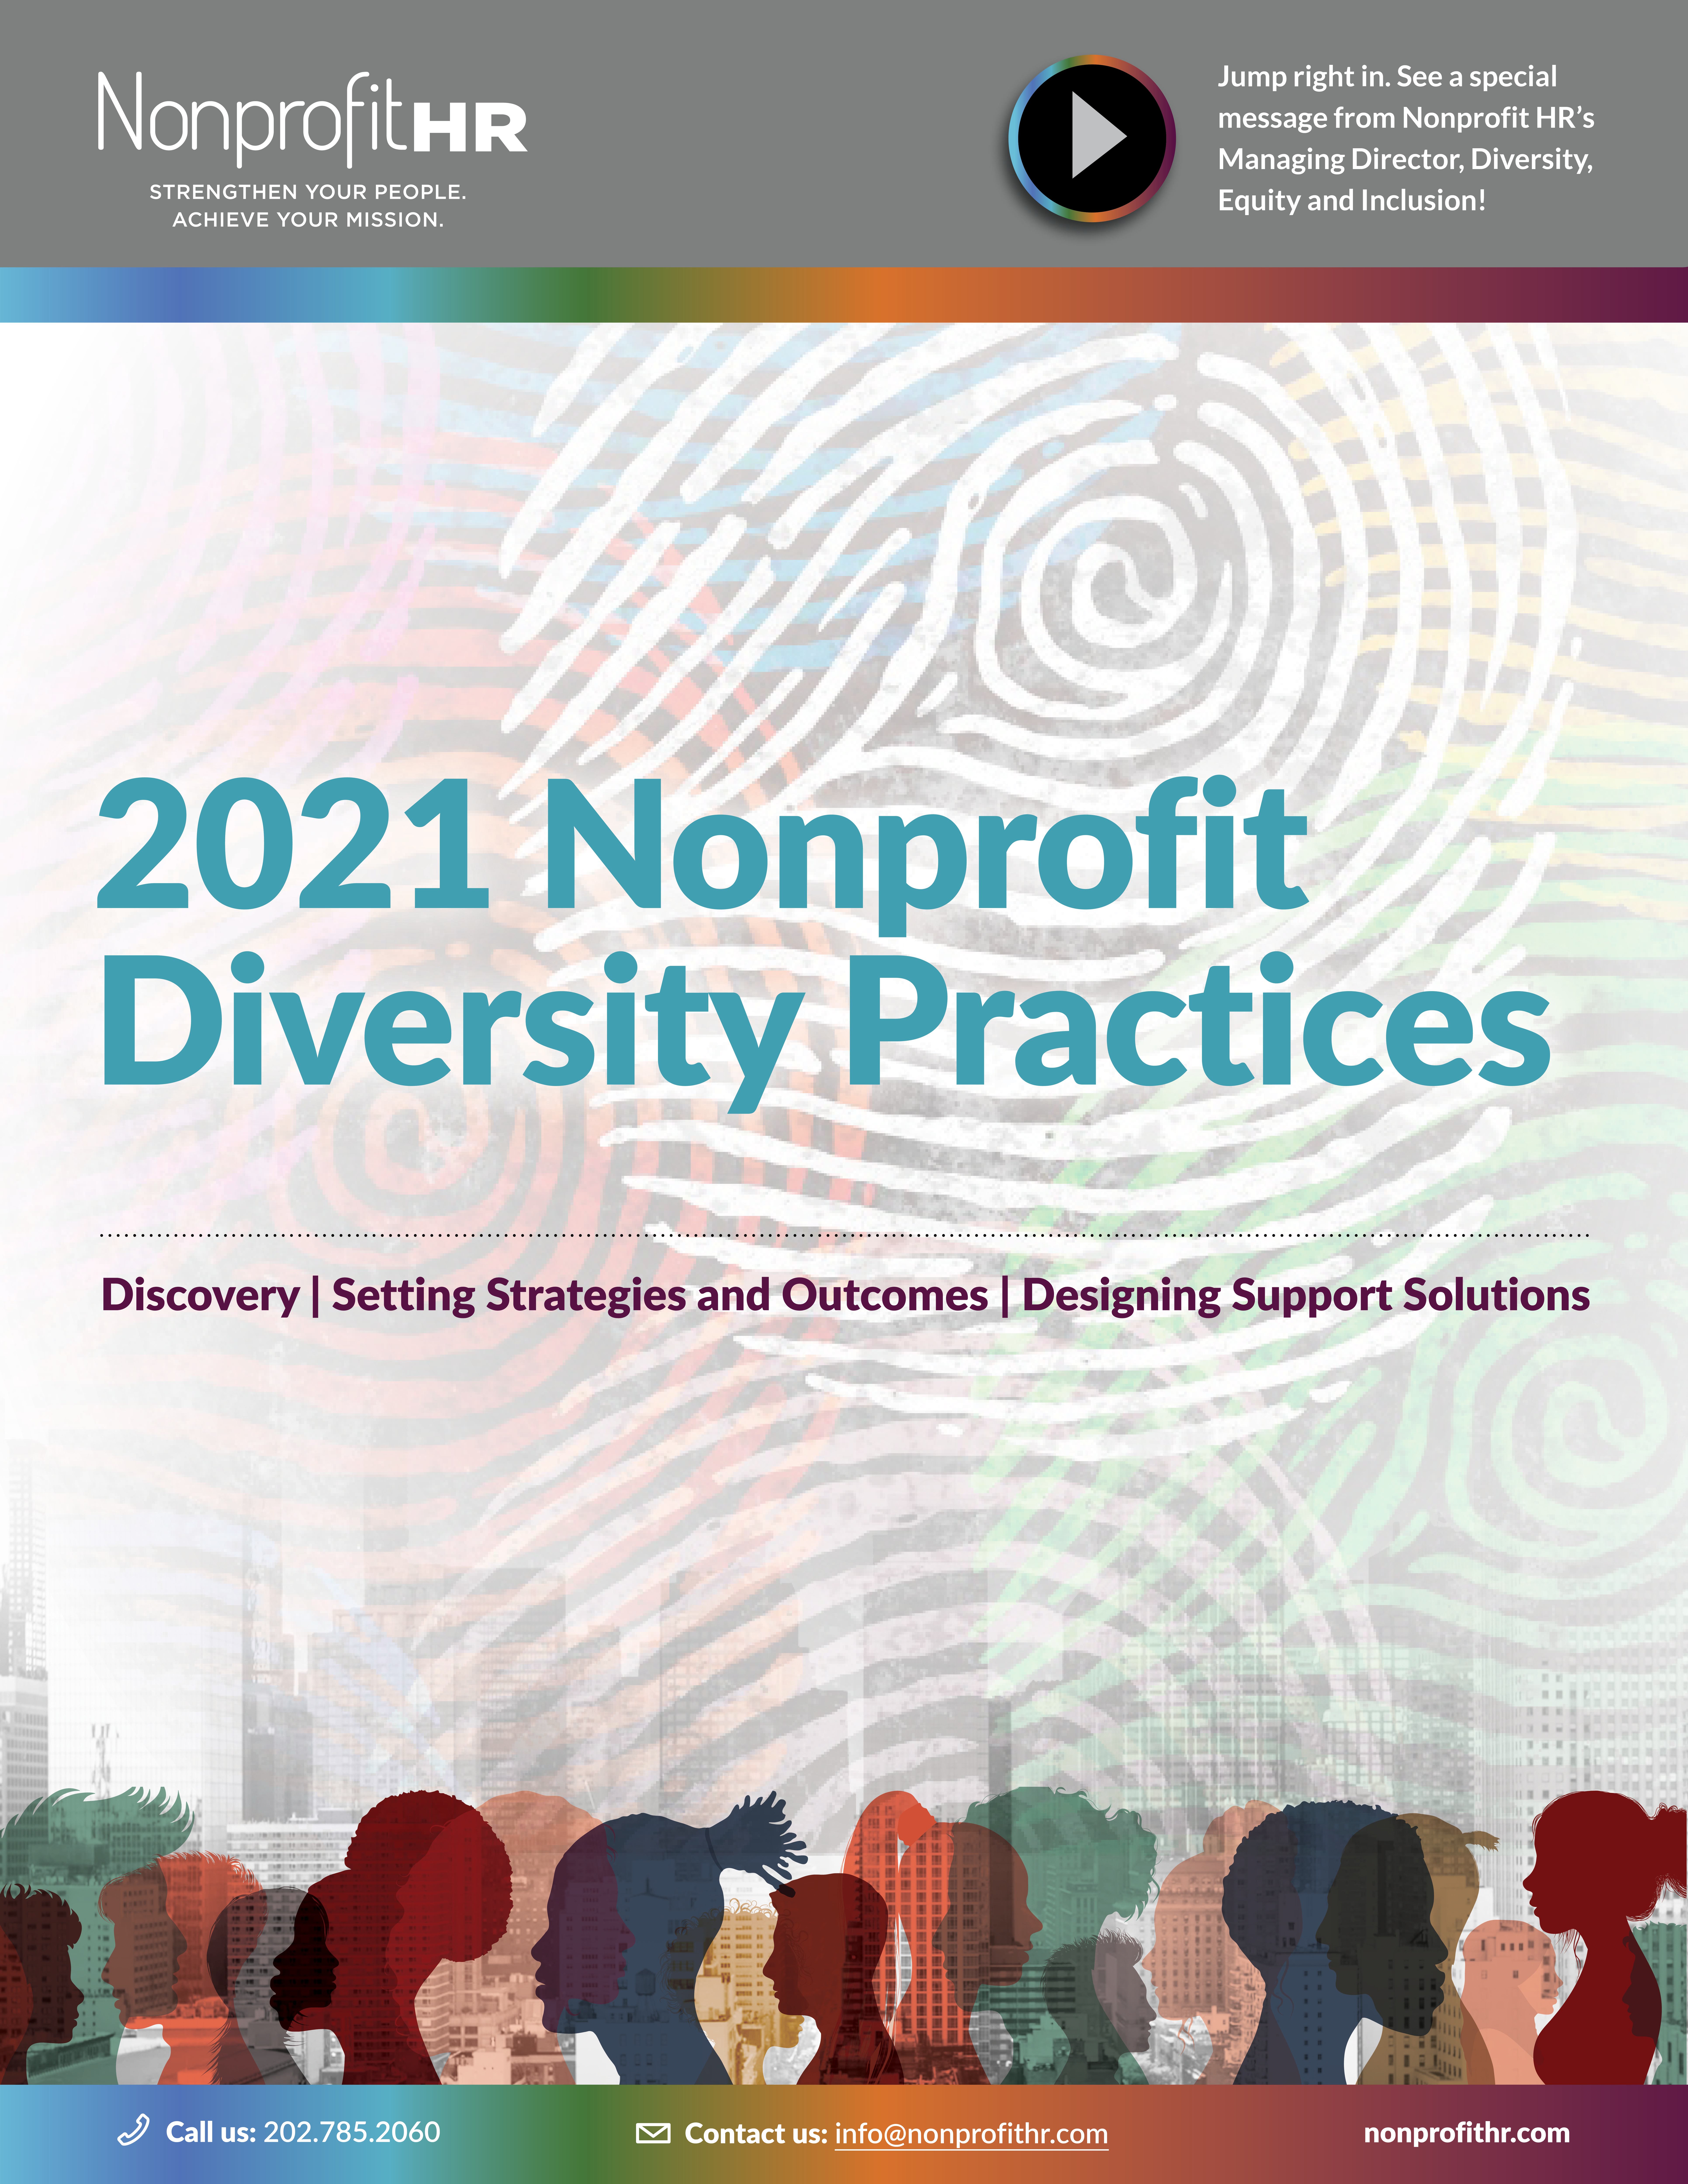 2021 Nonprofit Diversity Practices